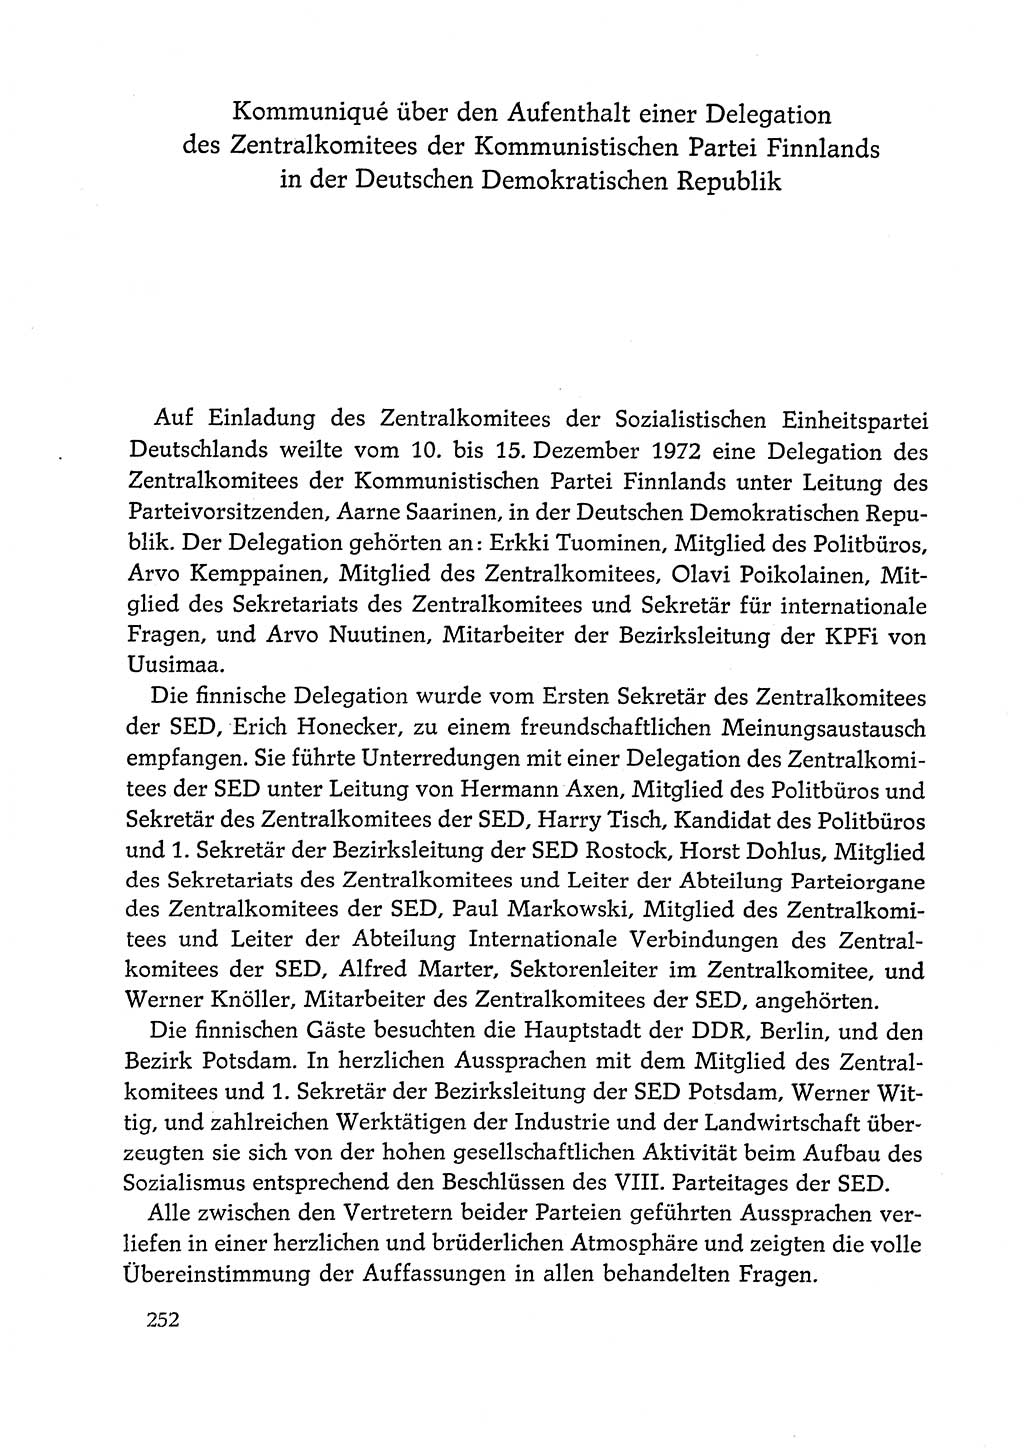 Dokumente der Sozialistischen Einheitspartei Deutschlands (SED) [Deutsche Demokratische Republik (DDR)] 1972-1973, Seite 252 (Dok. SED DDR 1972-1973, S. 252)